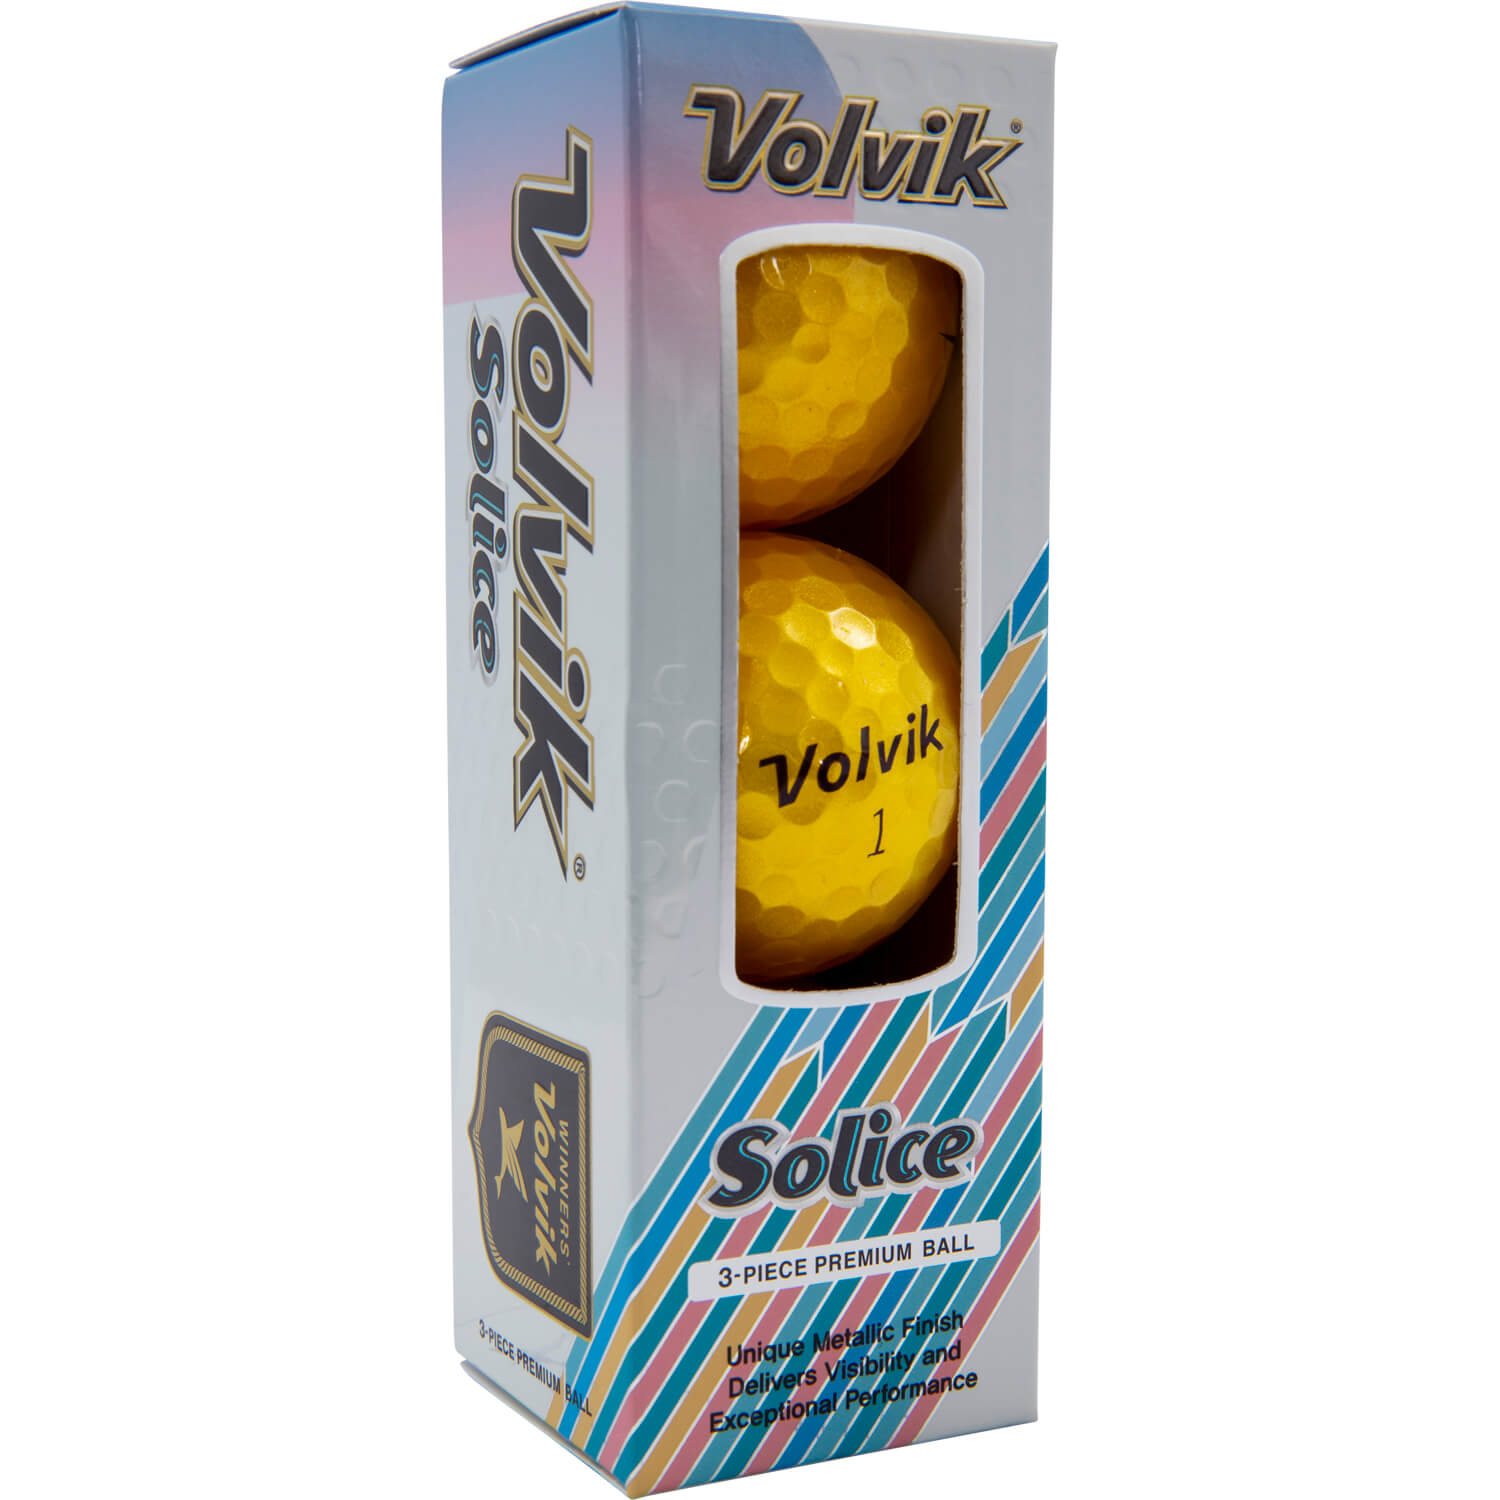 Volvik Solice Metallic Finish gold